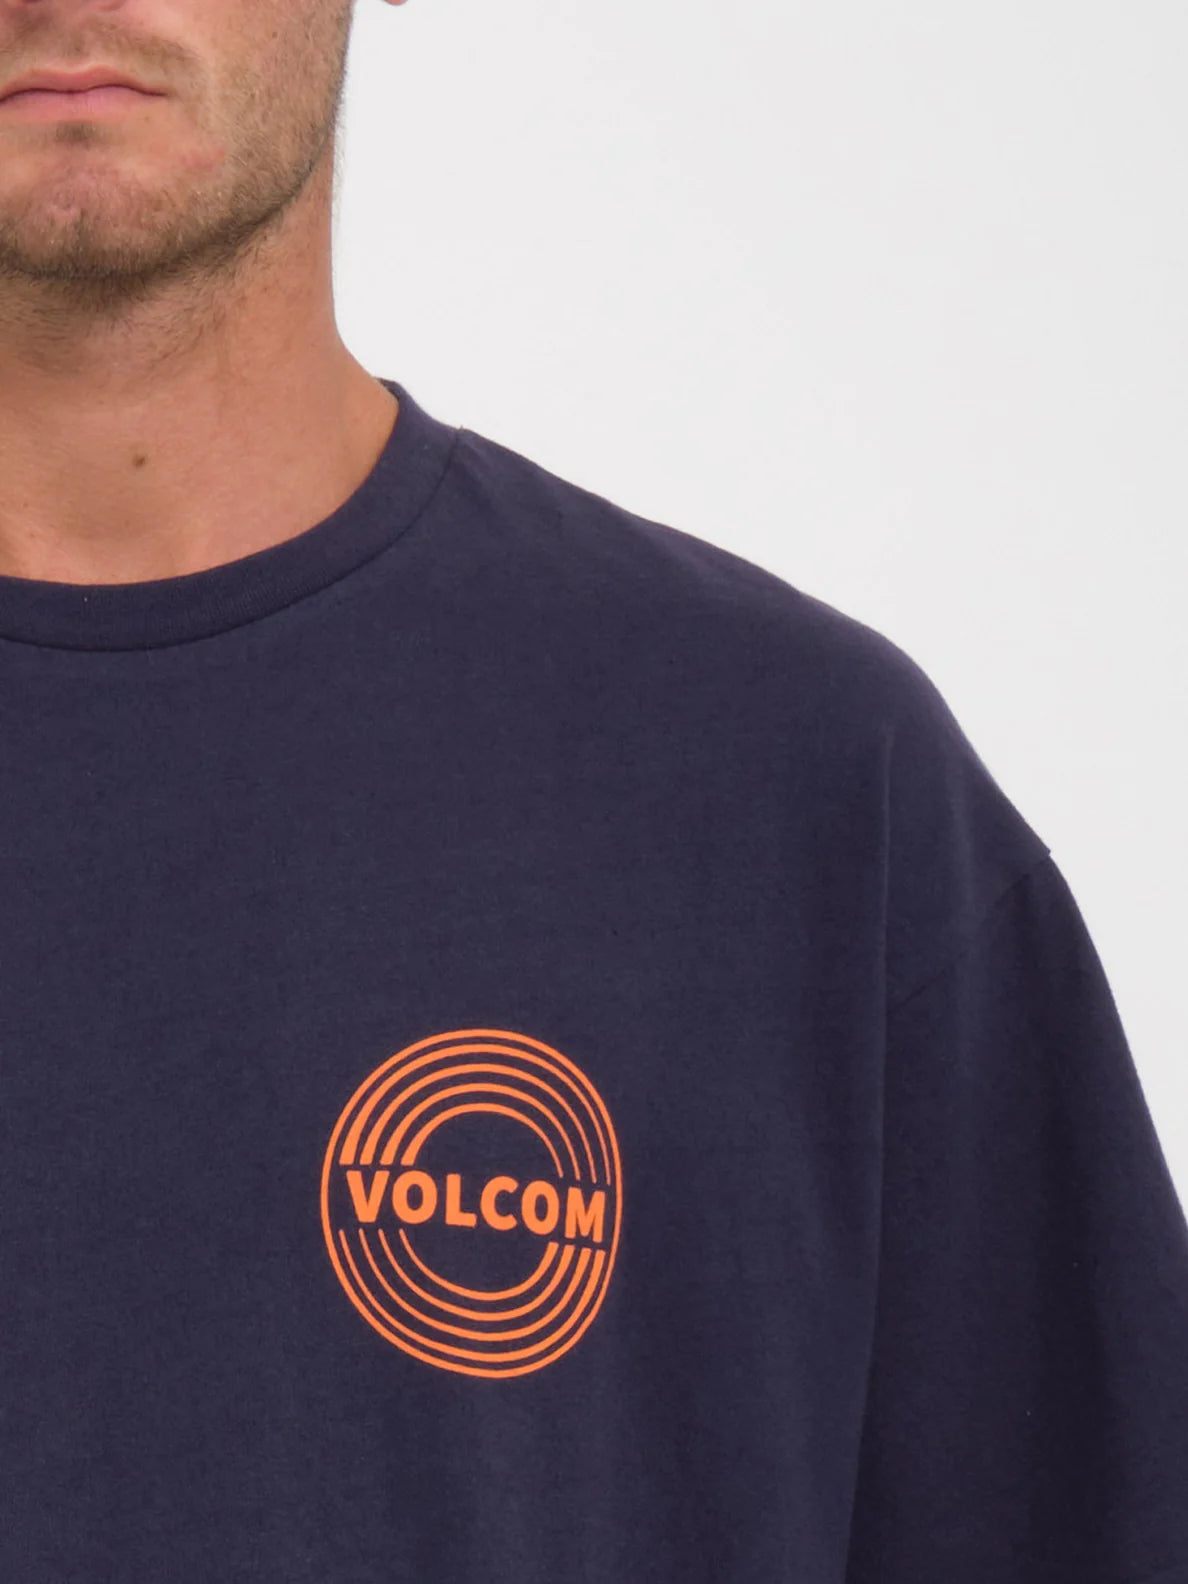 Camiseta Volcom Switchflip - Eclipse | Camisetas de hombre | Camisetas manga corta de hombre | Volcom Shop | surfdevils.com